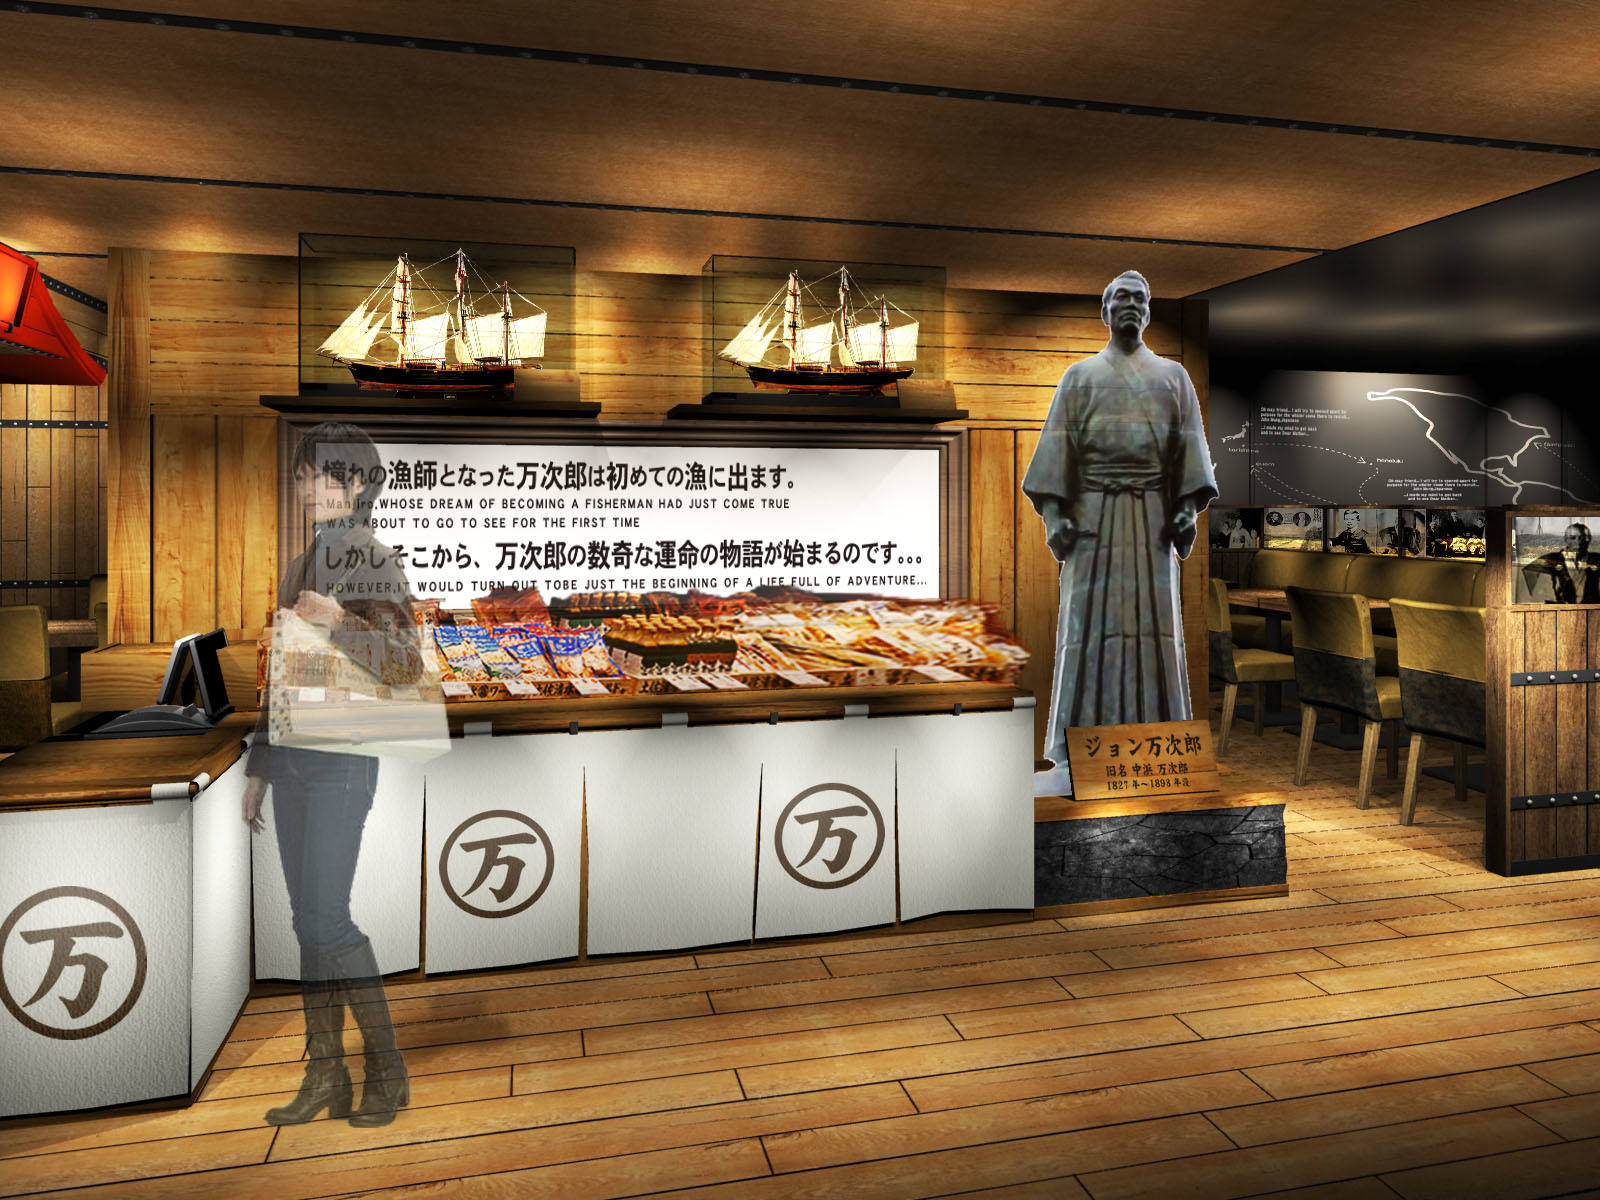 板前寿司 甲府店限定「高級寿司食べ放題」が
予約殺到、好評につき4月15日(月)より通常営業を開始